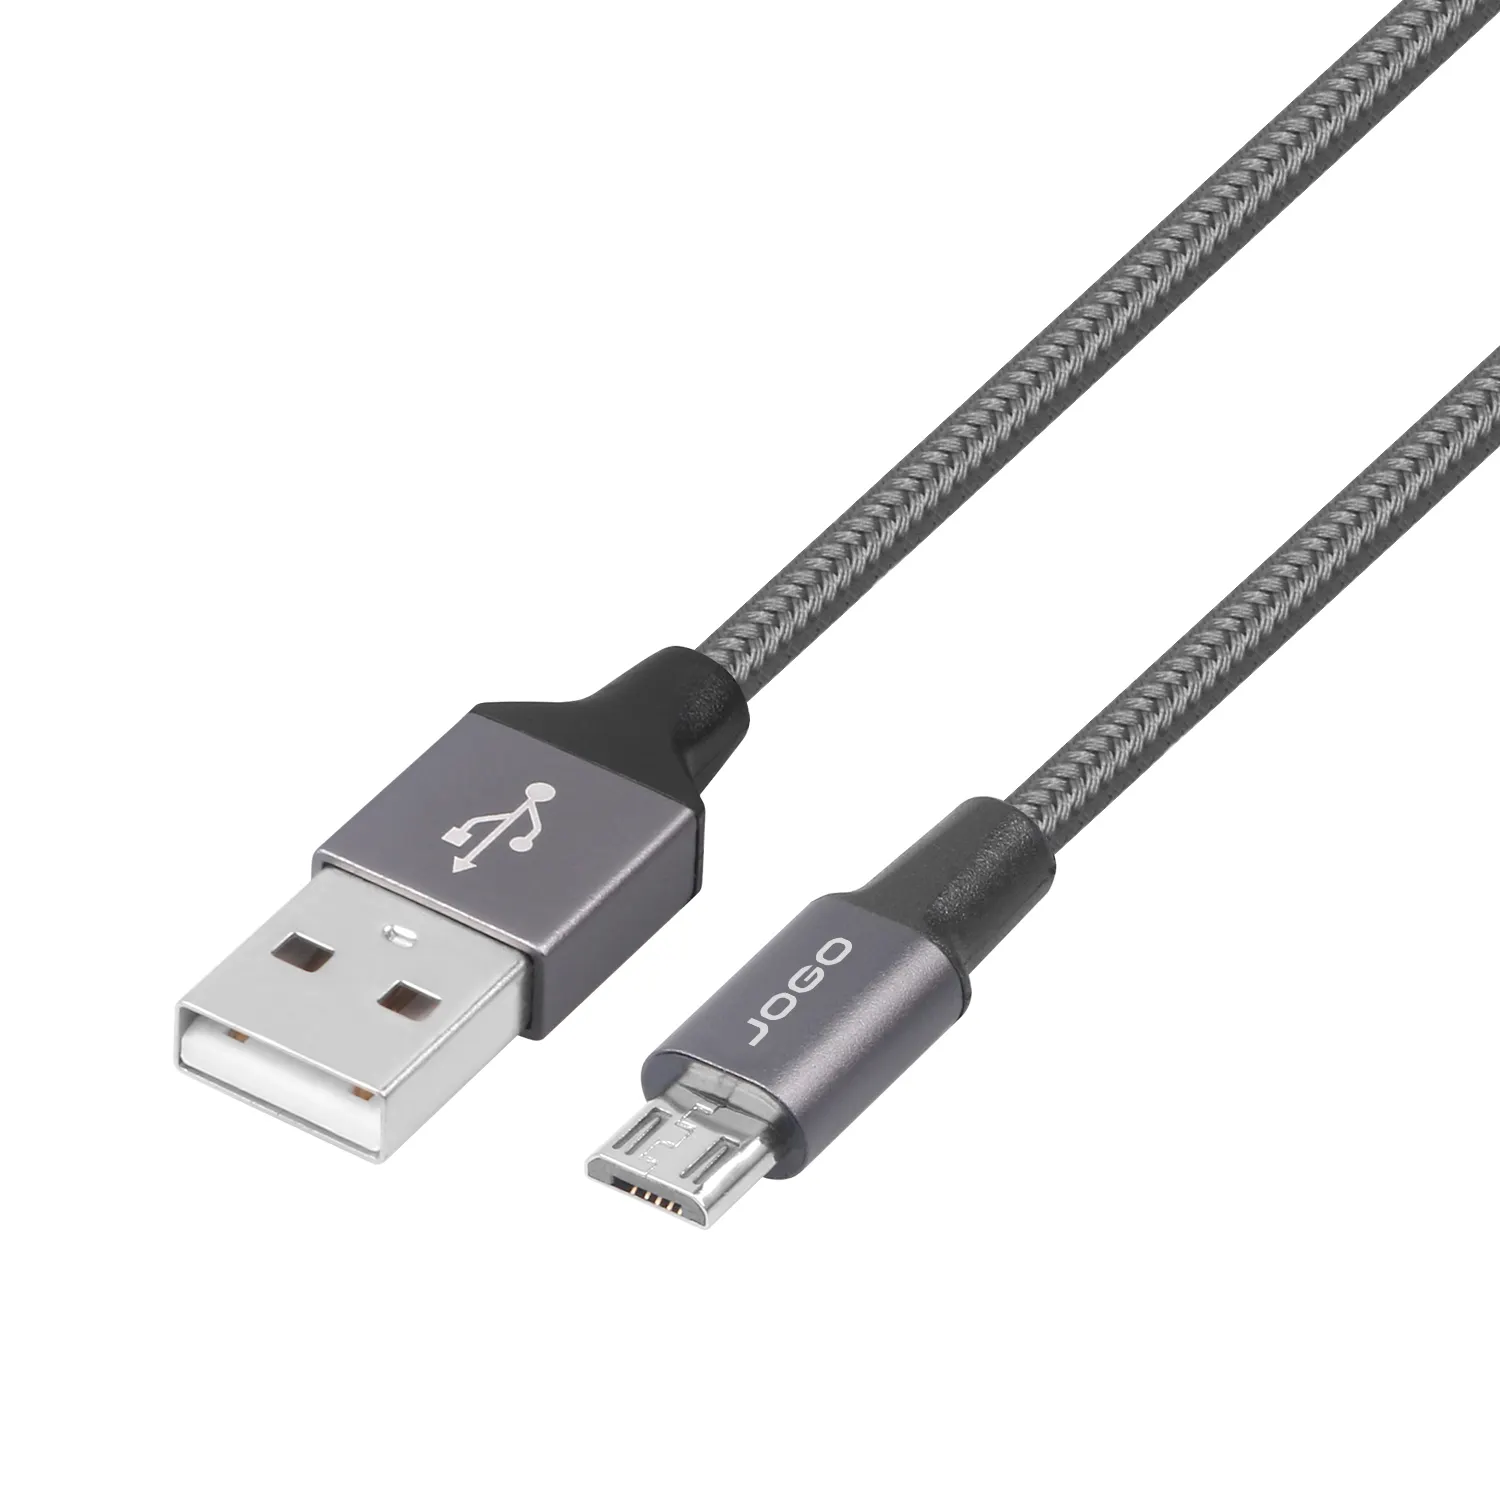 유형 마이크로 USB 케이블 고속 자료 및 위탁 여분 내구재는 480-Mbps 자료 전송 속도를 지원합니다